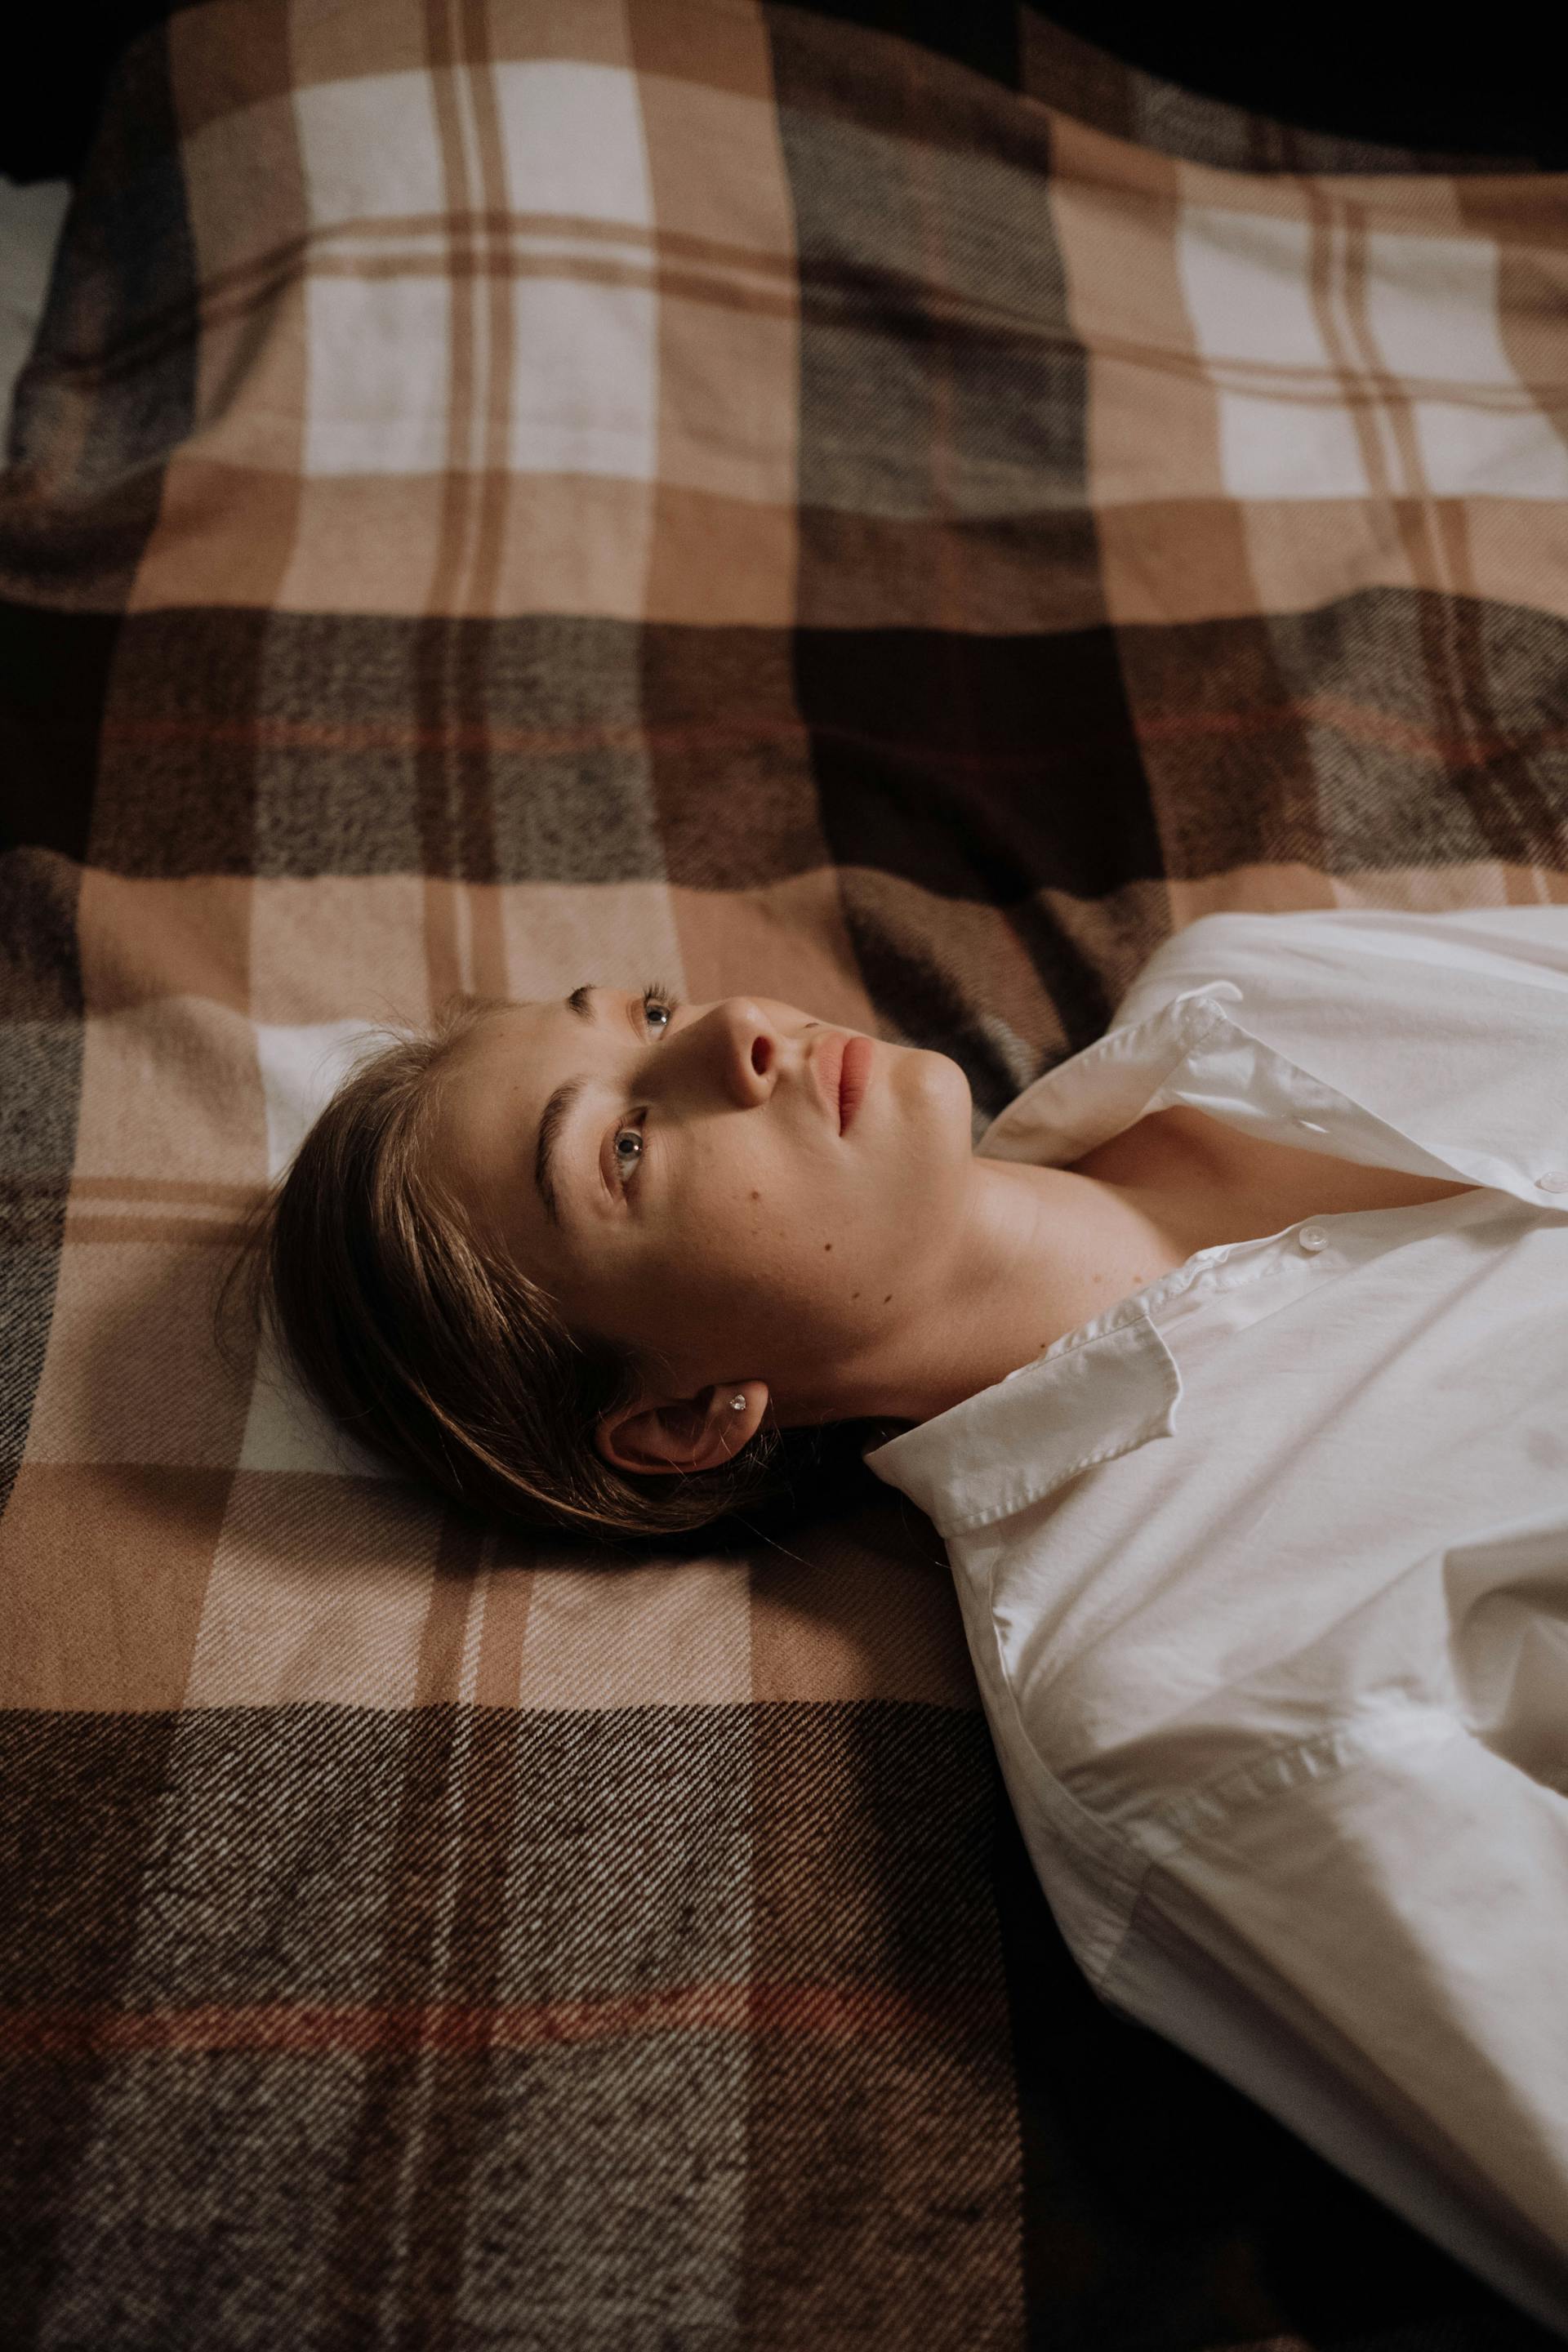 Une femme allongée sur le lit | Source : Pexels